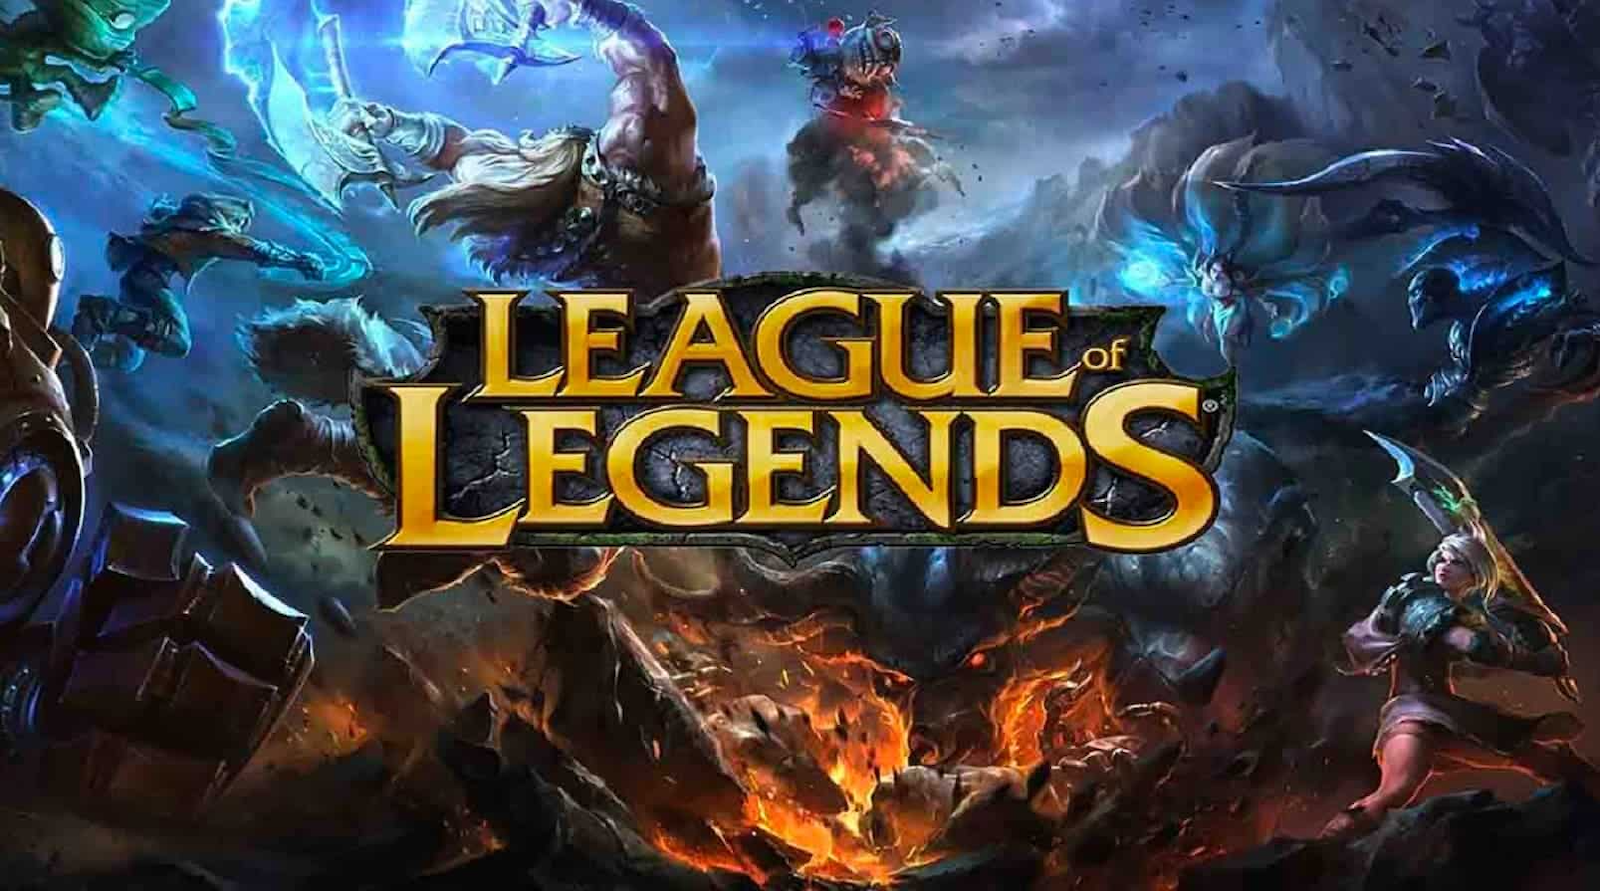 werkloosheid verdacht tijger Is League of Legends on Xbox? - Dot Esports